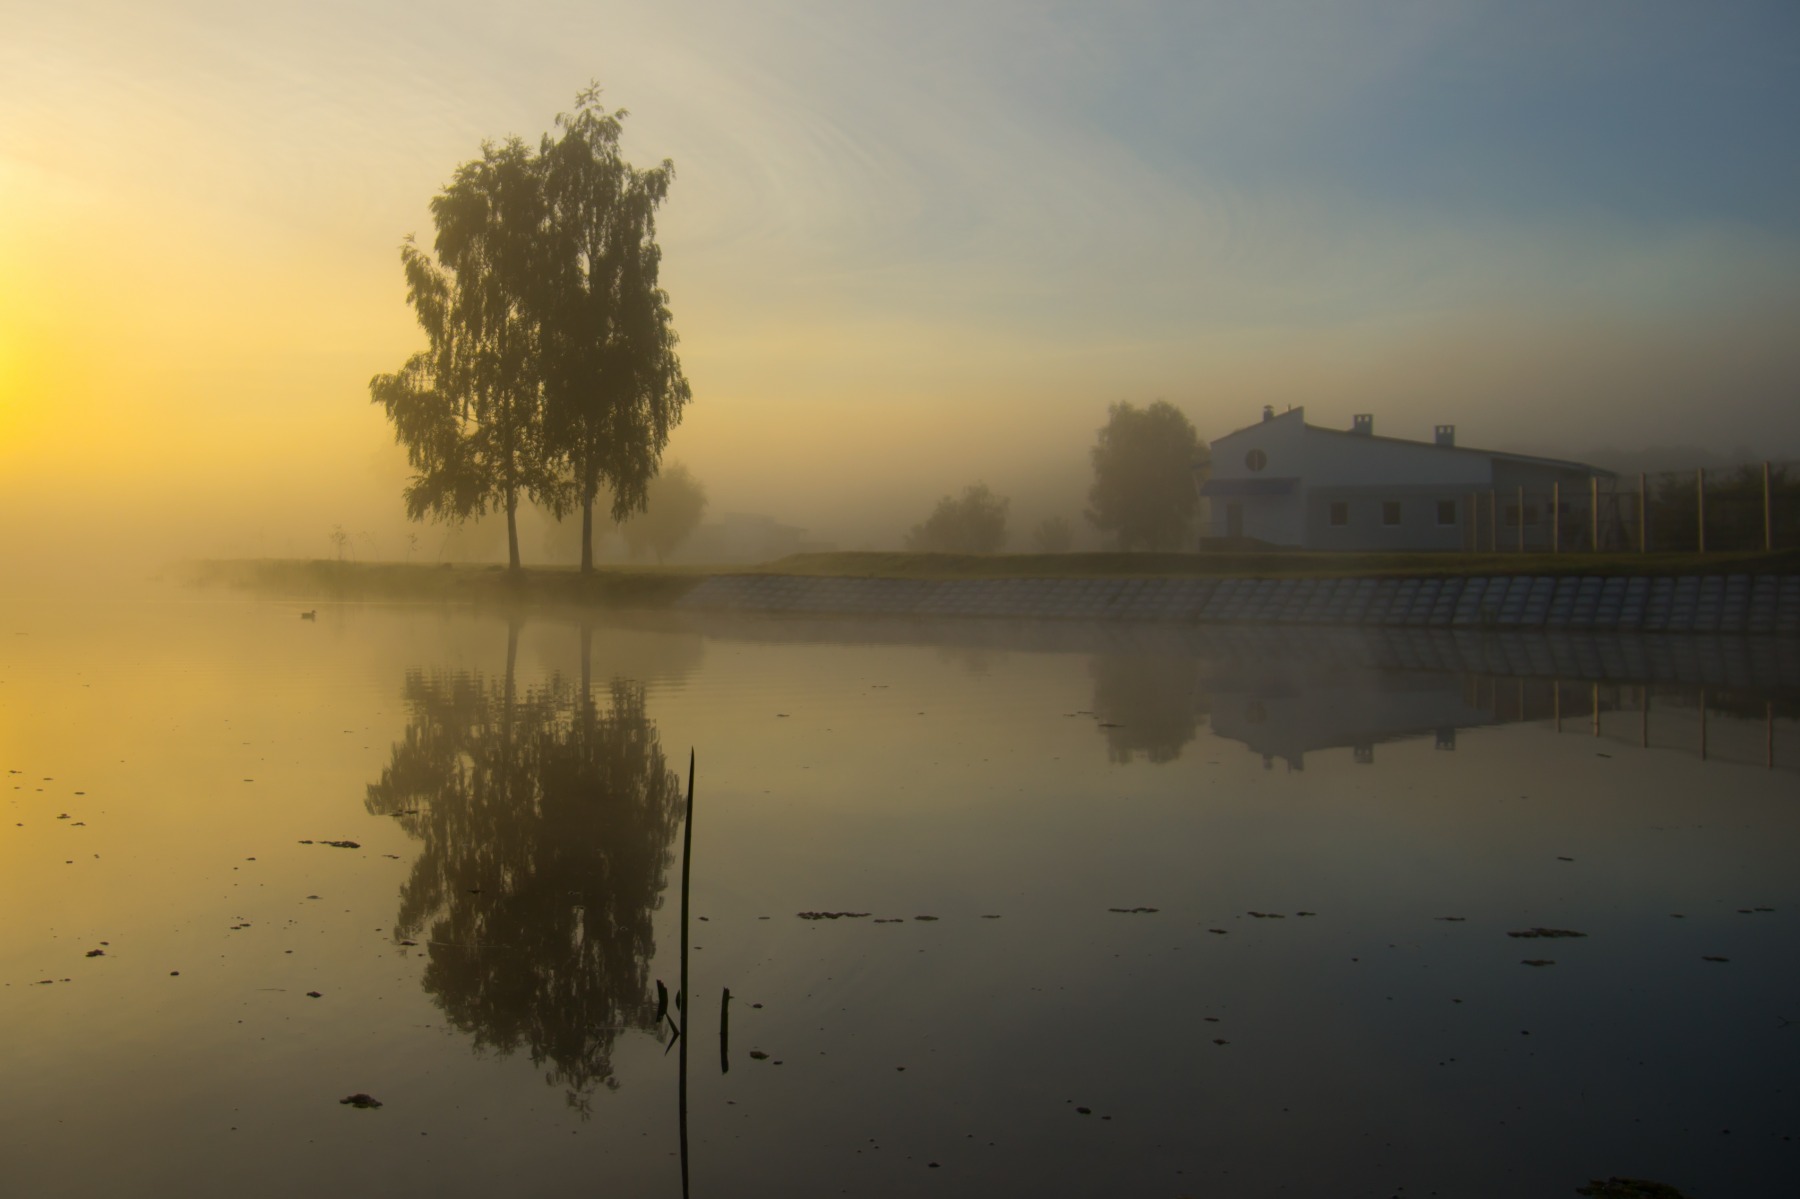 Туманное утро на речке | Фотограф Виктор С | foto.by фото.бай